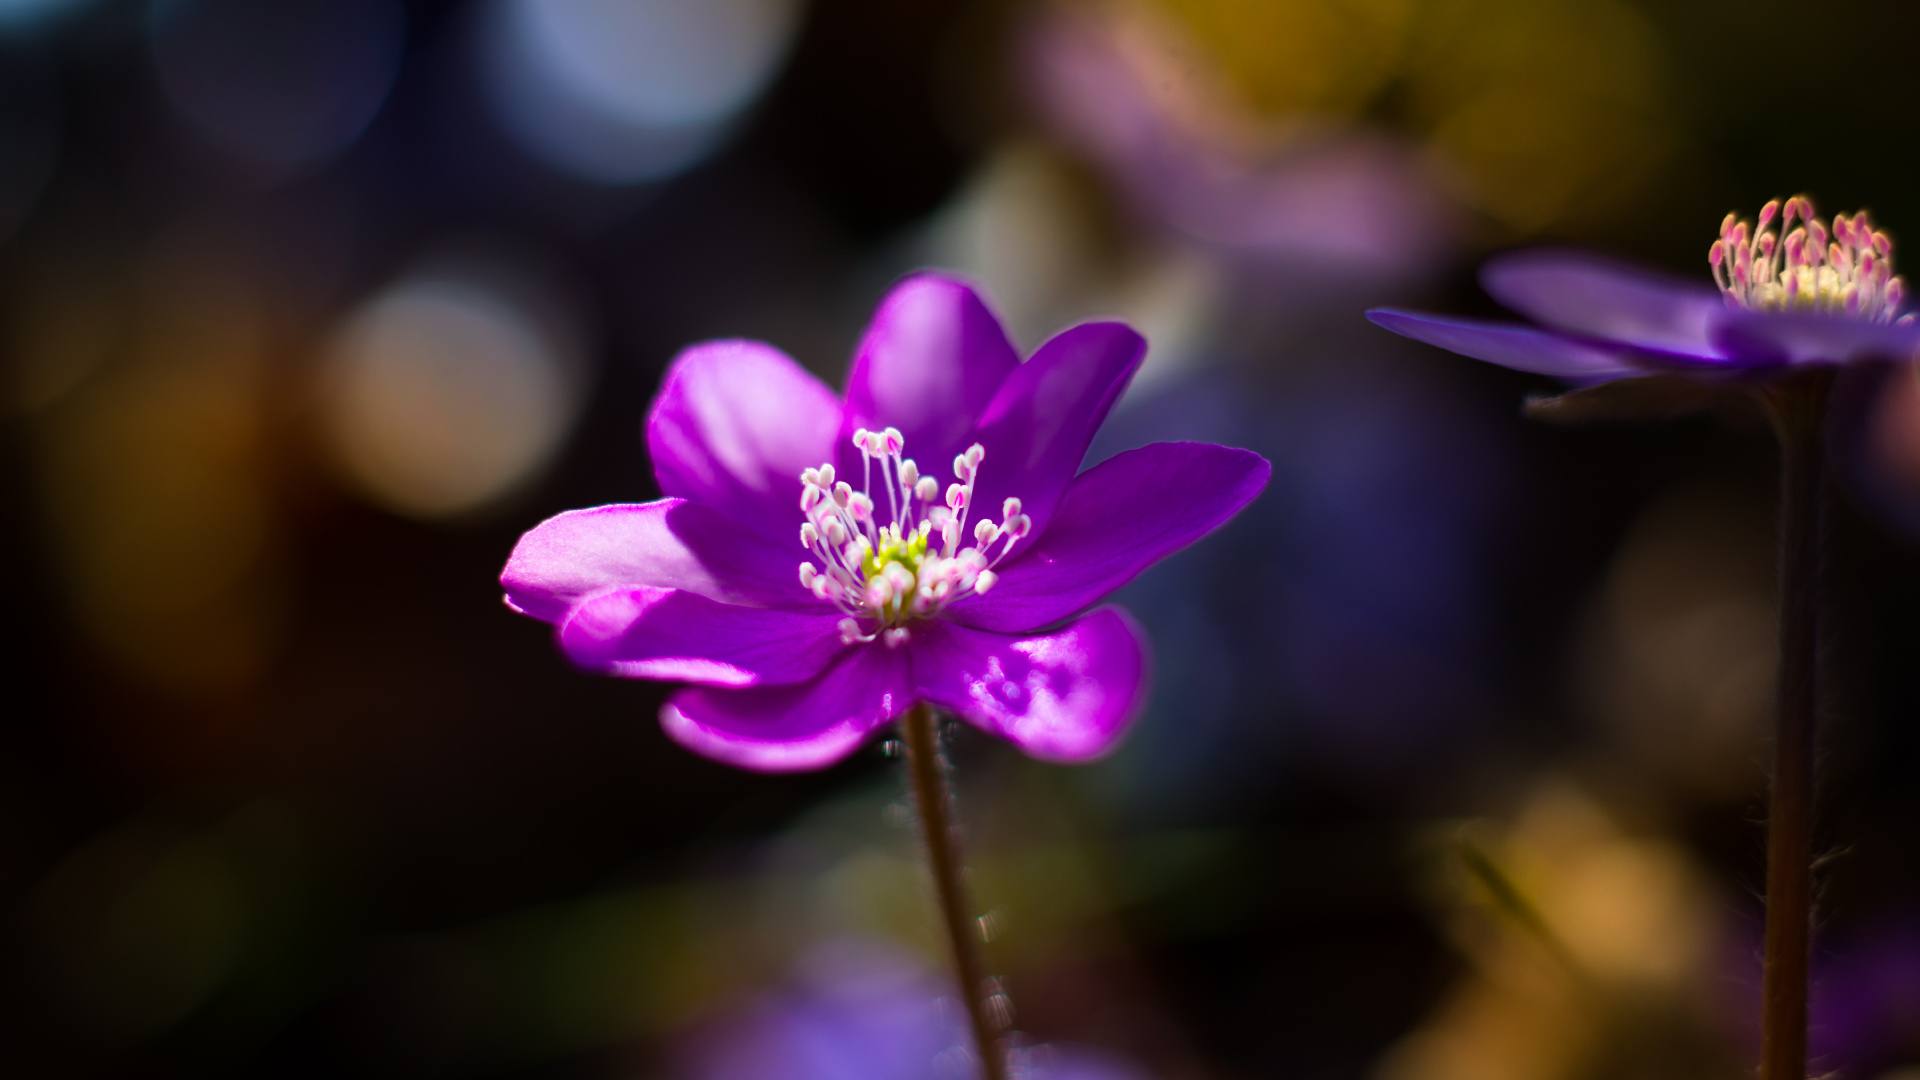 Purple Flower in Tilt Shift Lens. Wallpaper in 1920x1080 Resolution